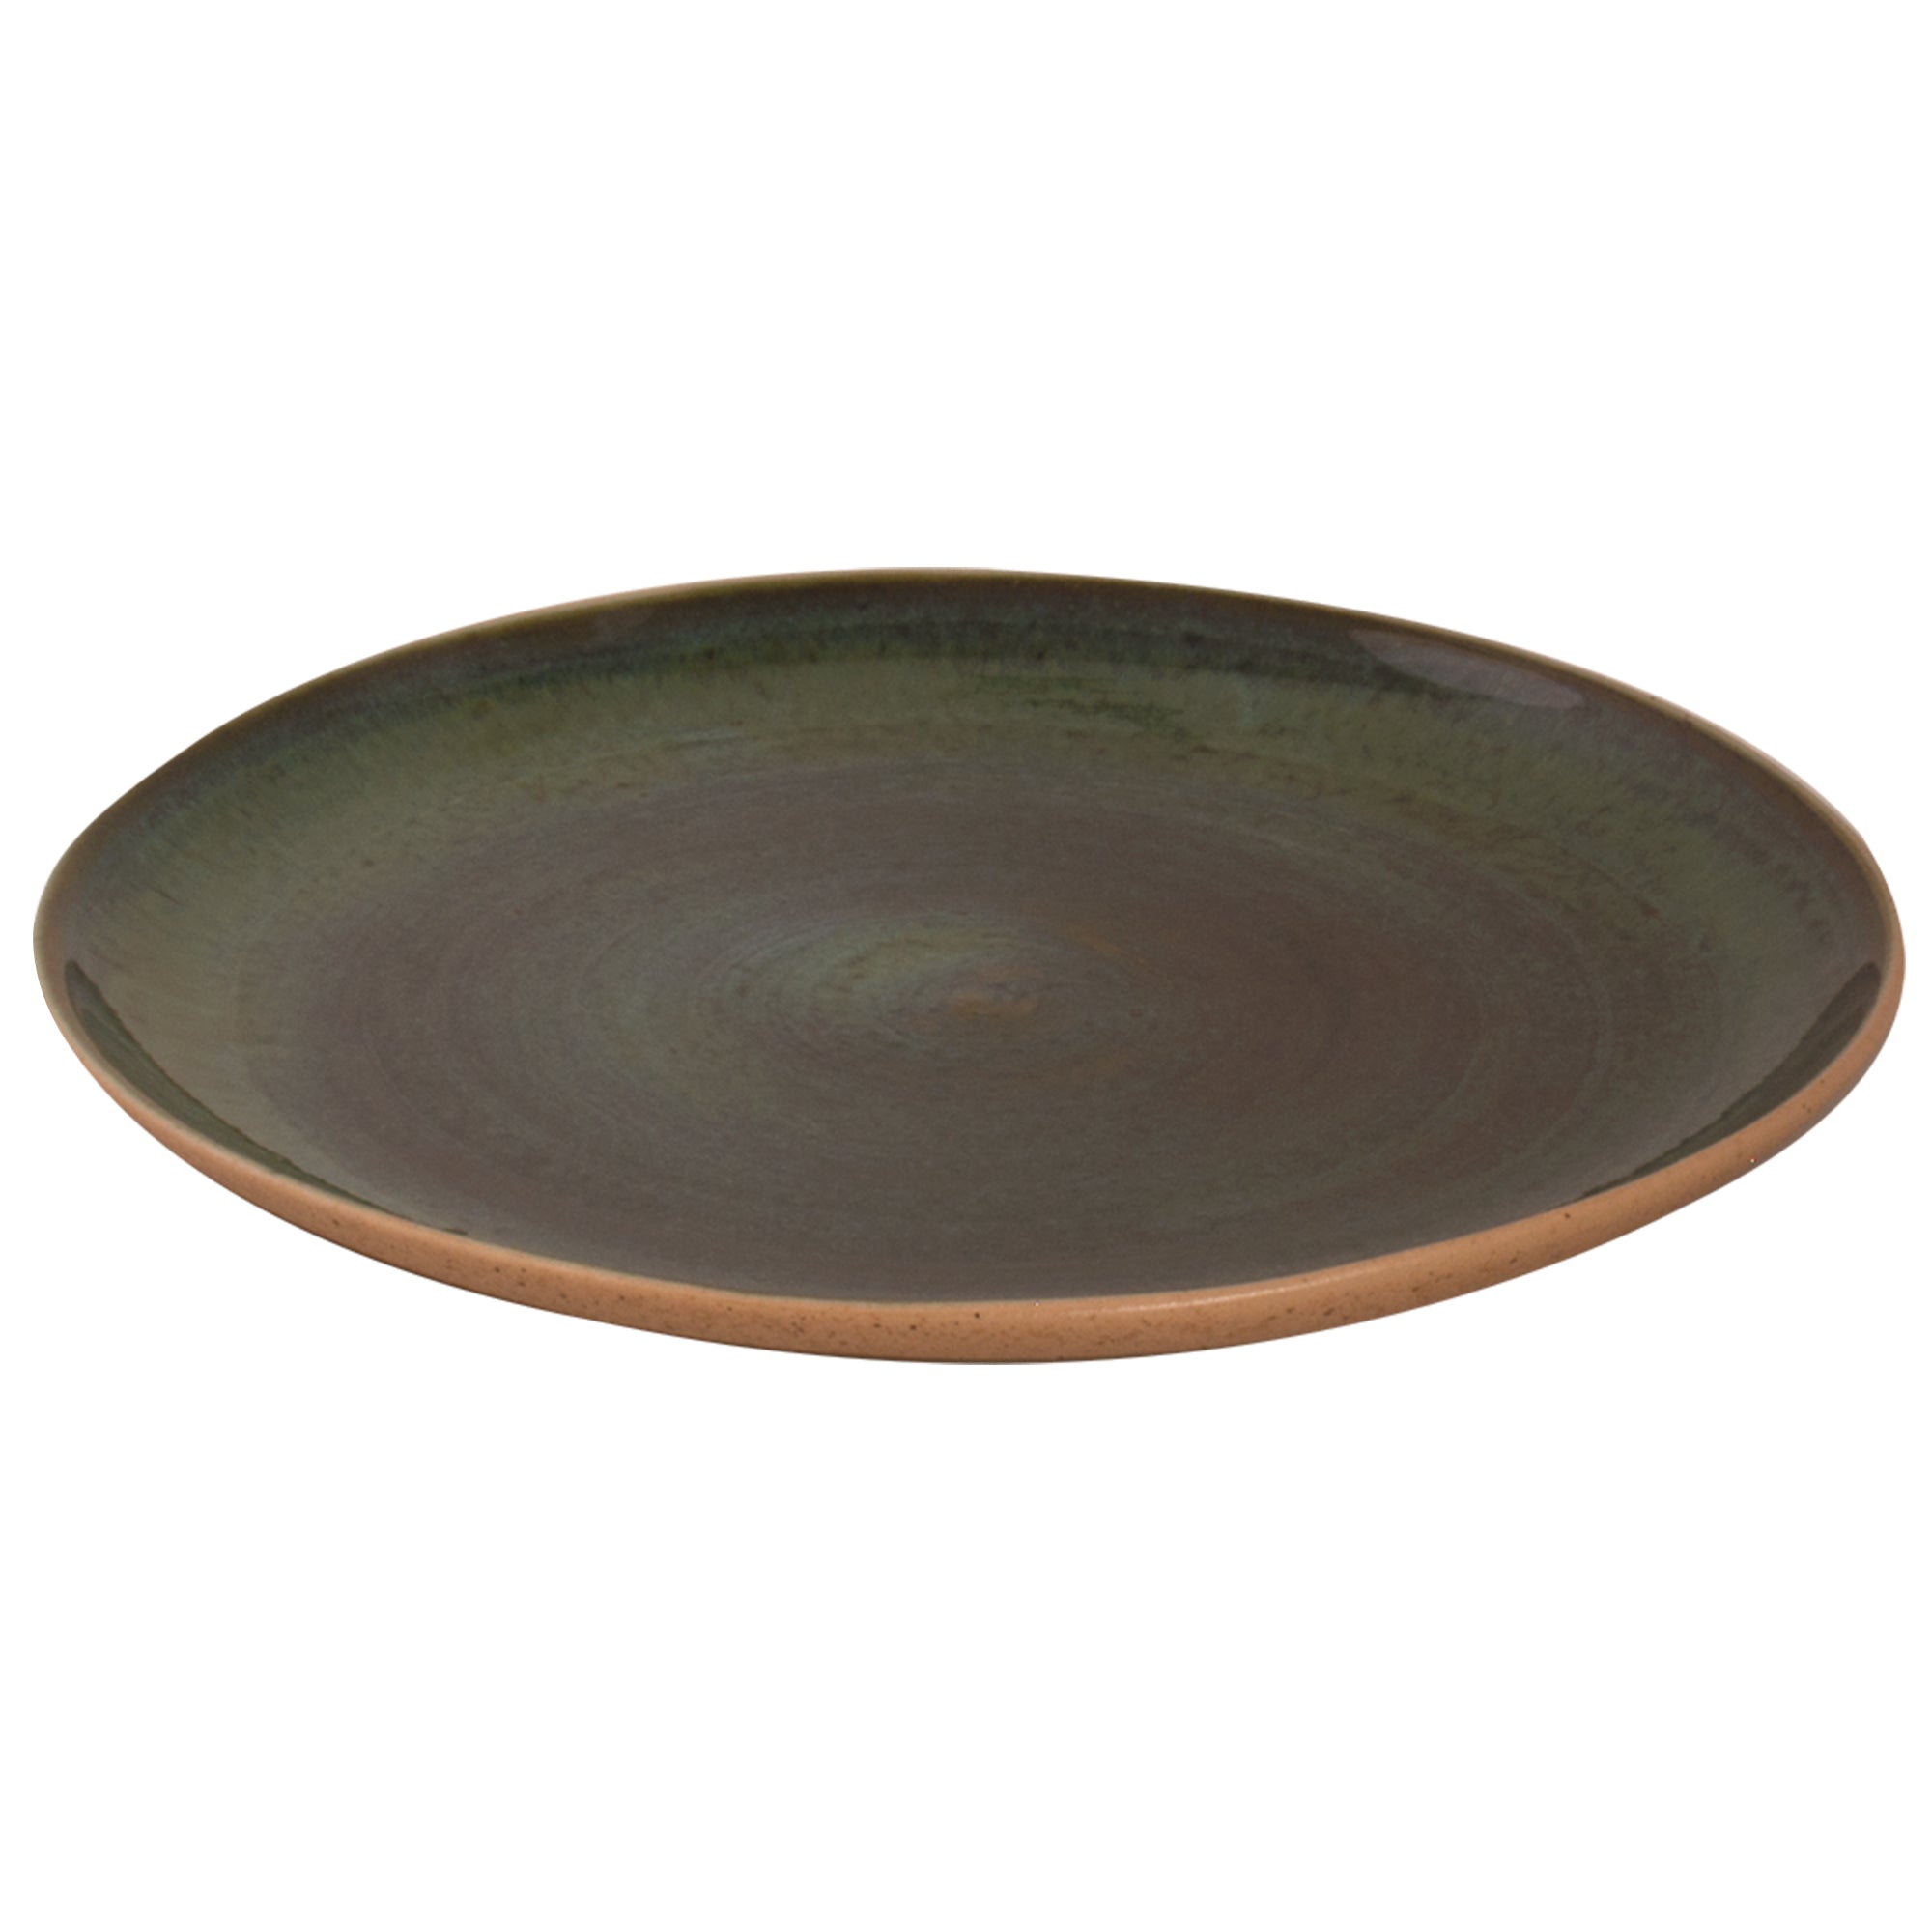 (6 броя) WISTERIA - Плоска чиния - Ø 28,5 cm - Зелена/Бежова